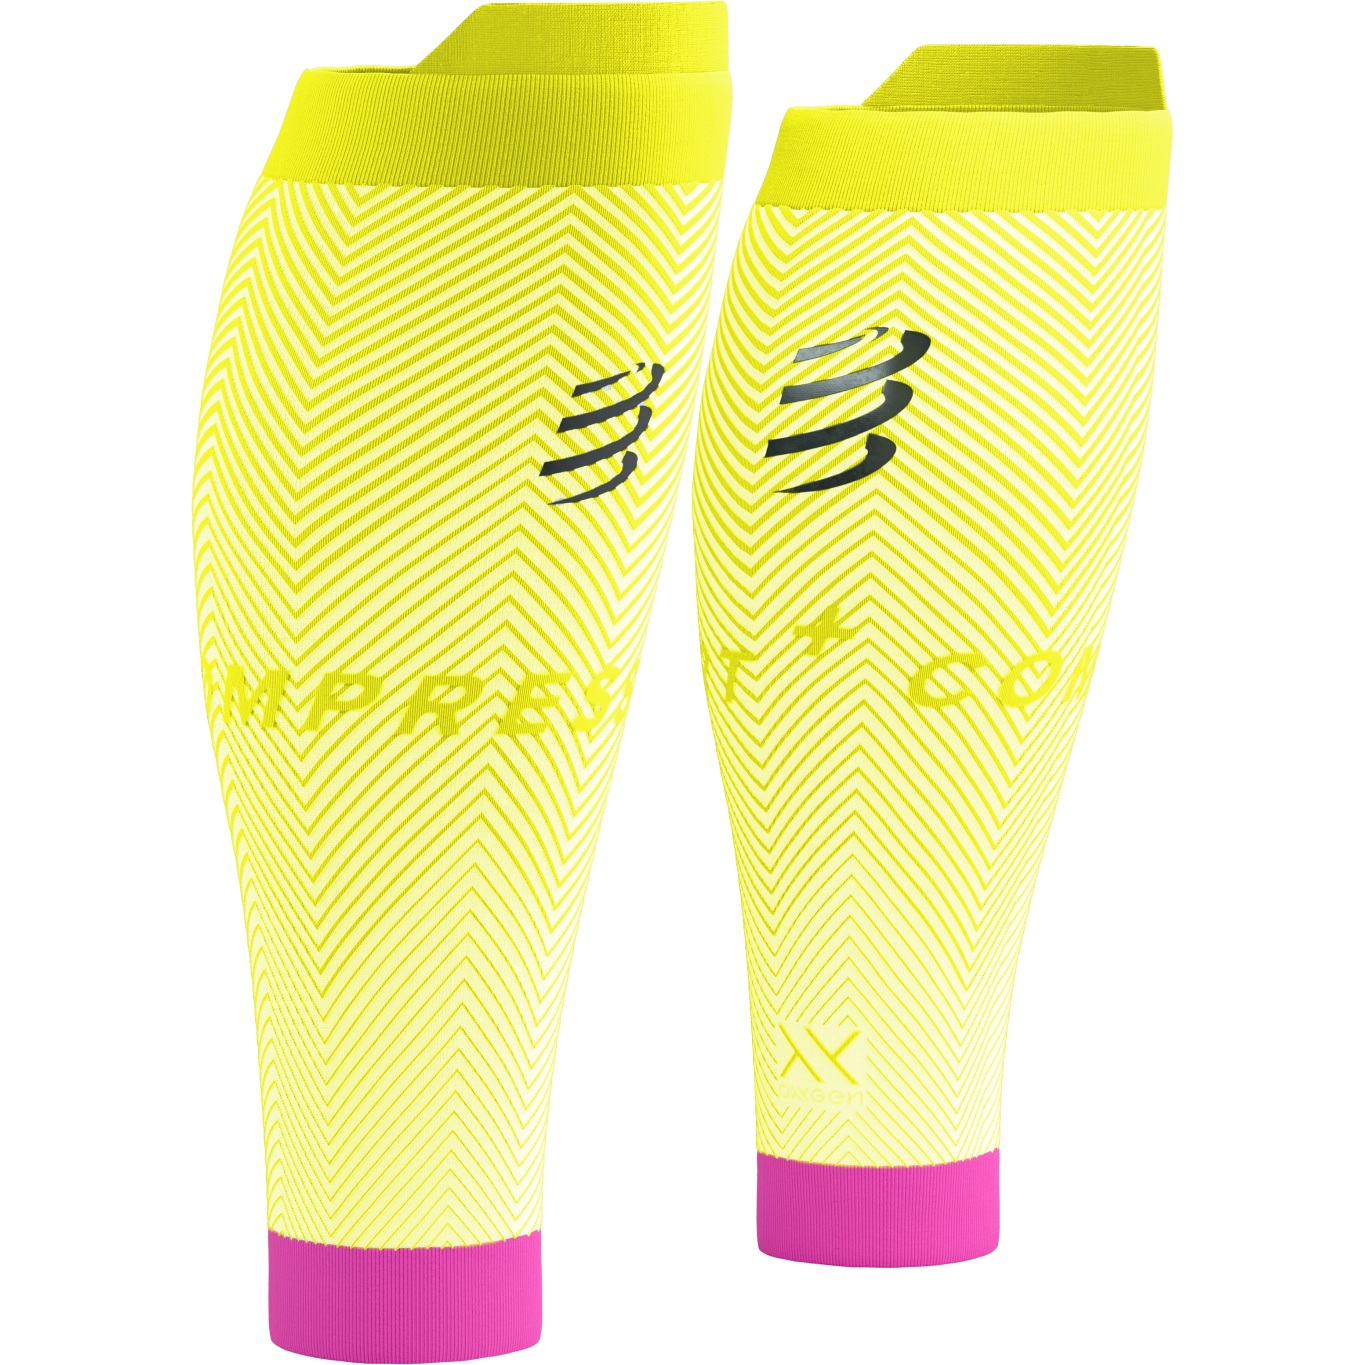 Produktbild von Compressport R2 Oxygen Wadenkompressoren - white/safety yellow/neon pink